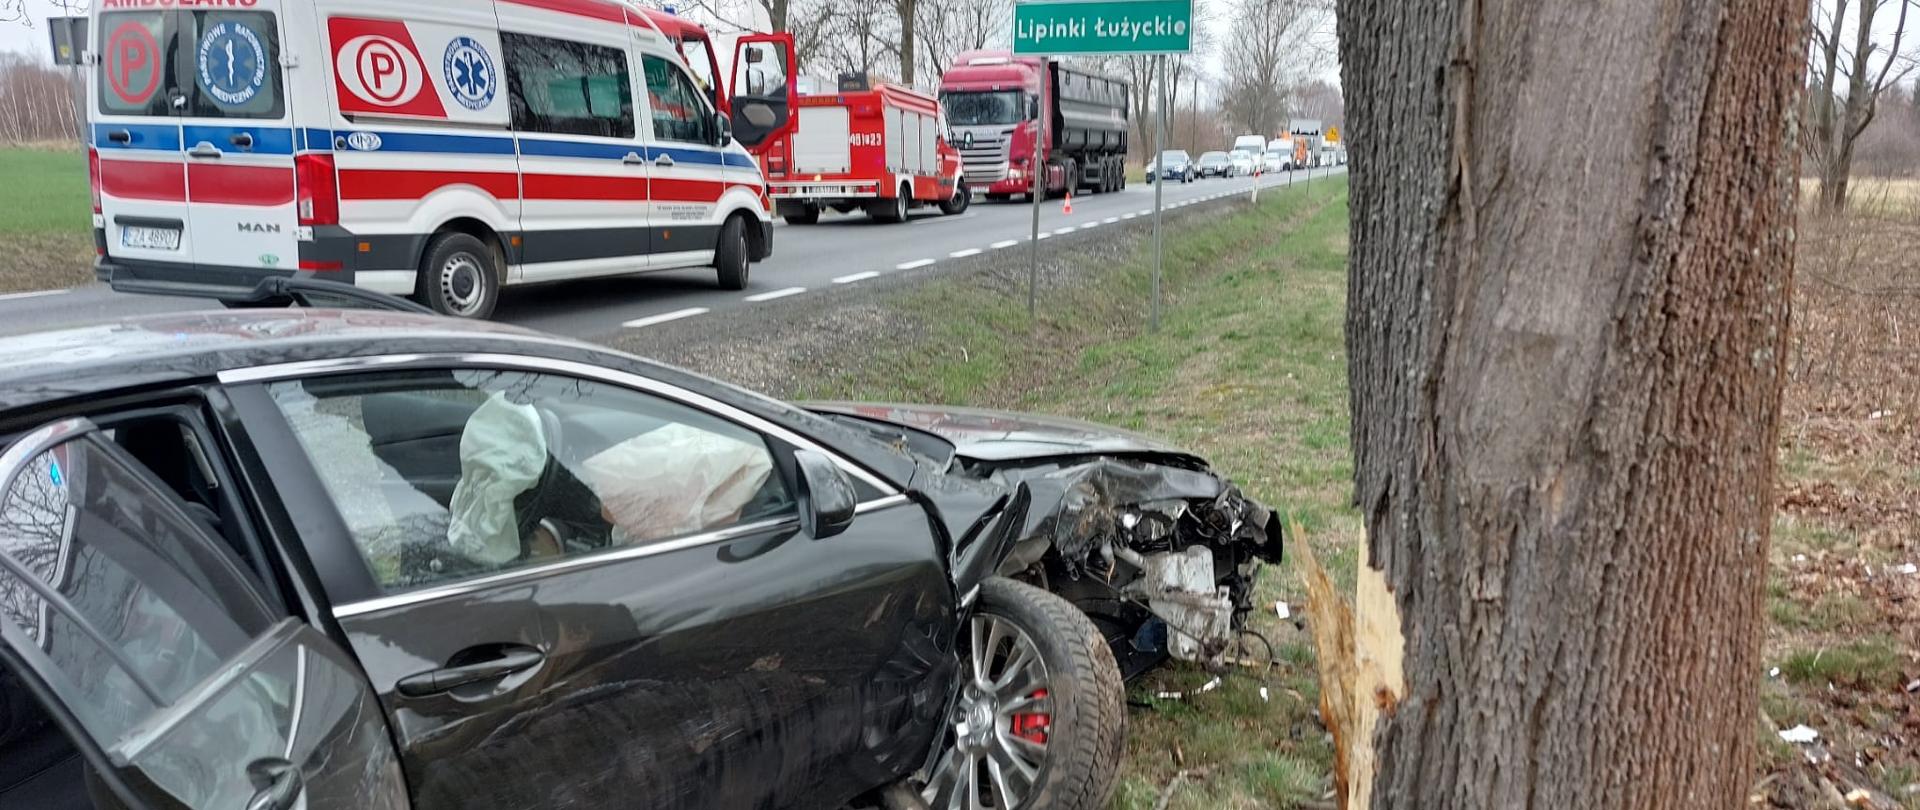 Na zdjęciu widać uszkodzony samochód osobowy marki Mazda po zderzeniu z przydrożnym drzewem znajdującego się na poboczu drogi krajowej numer dwadzieścia siedem. wyniku zderzenia uszkodzony jest przód i bok od strony pasażera samochodu. Na drodze przy samochodzie znajdują się karetka pogotowia i samochód ratownictwa technicznego straży pożarnej. Droga zablokowana. 